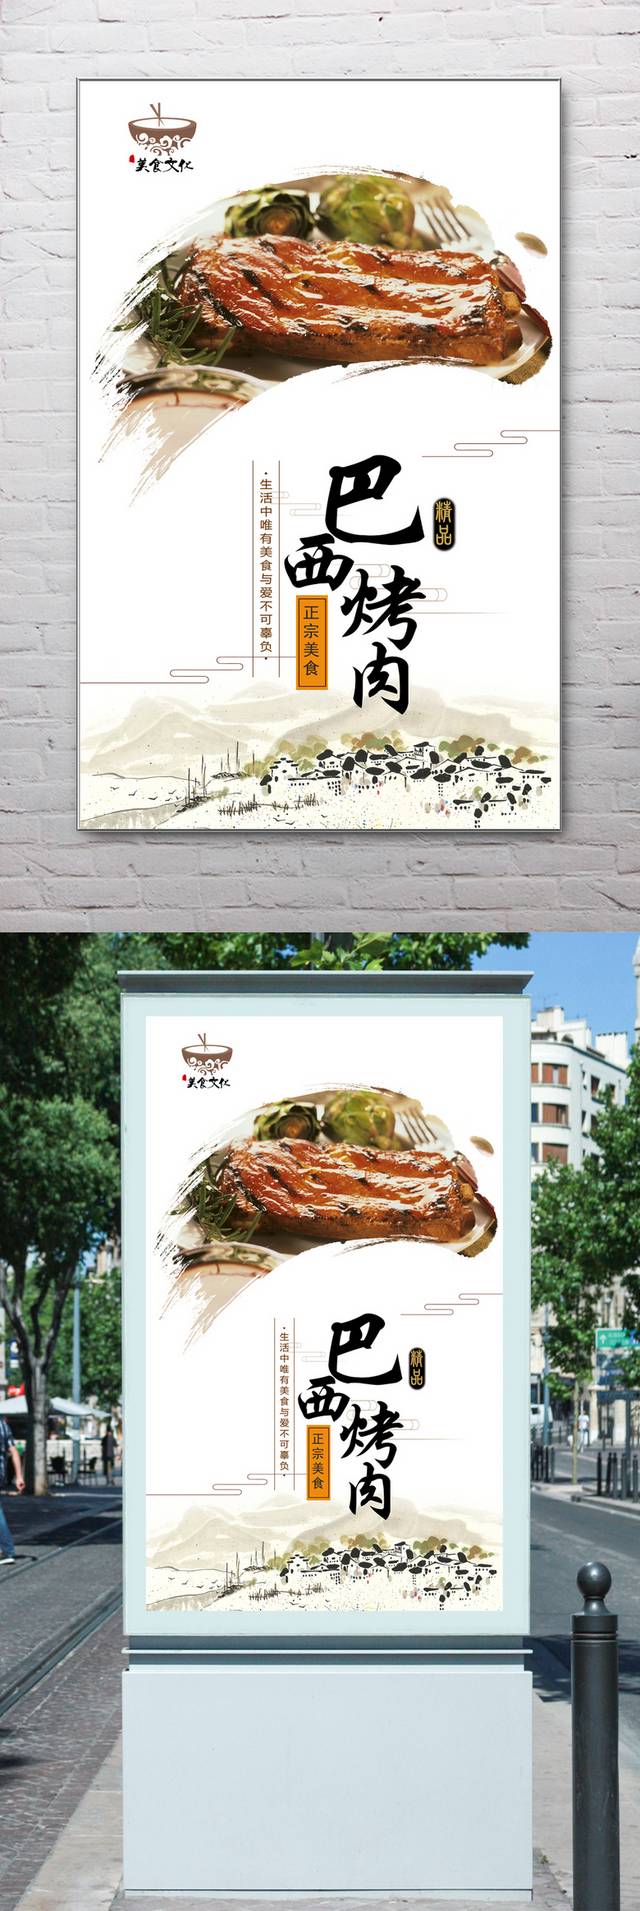 中国风巴西烤肉宣传海报